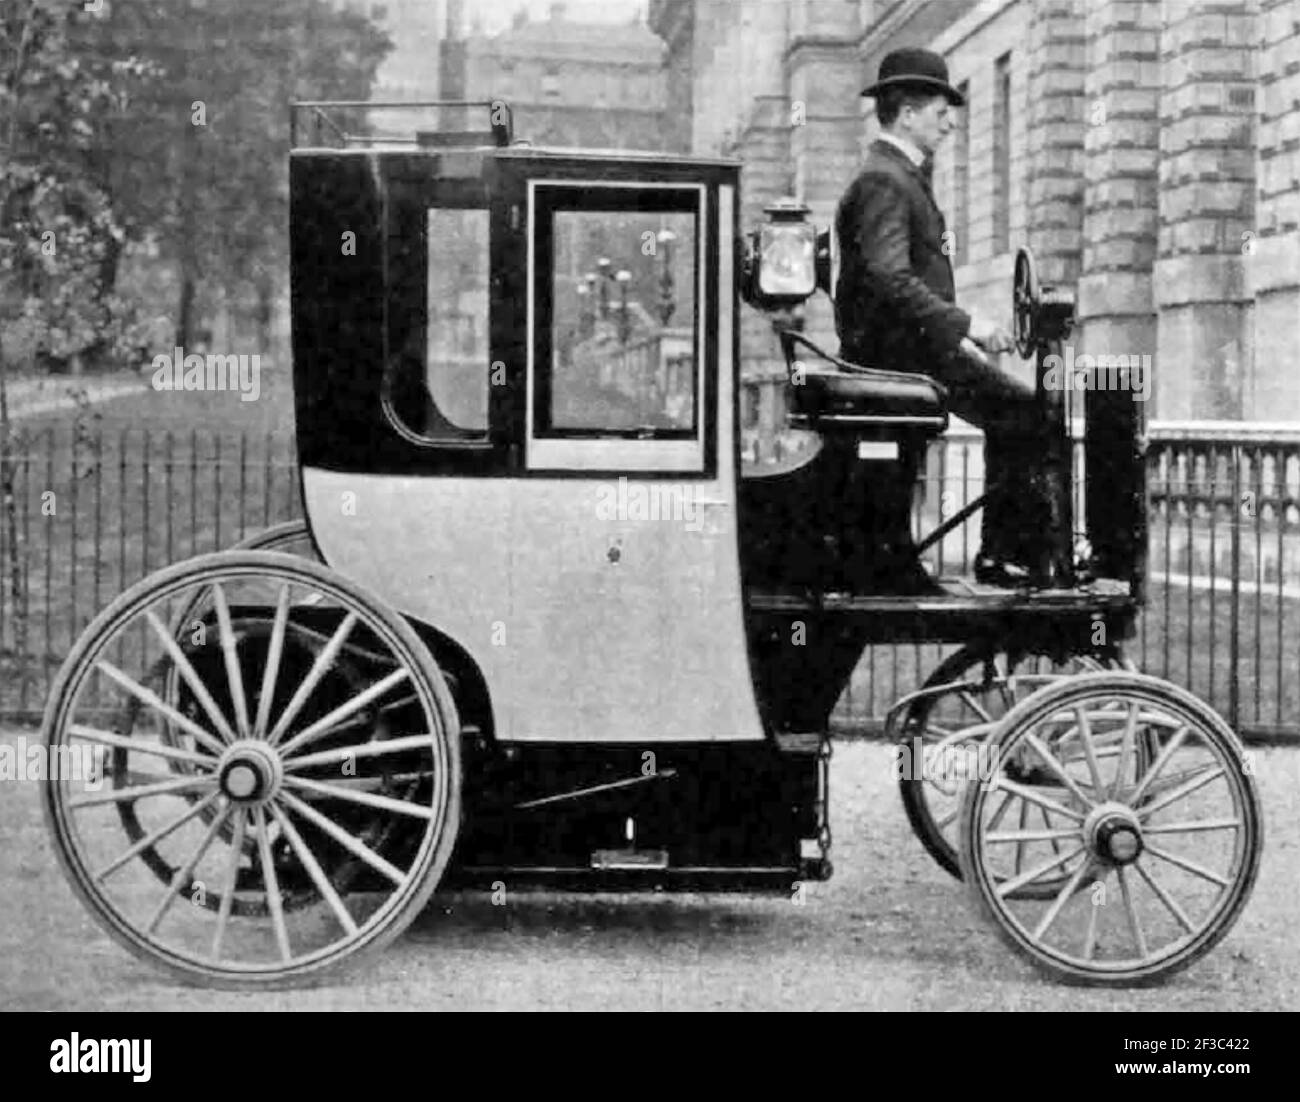 ELEKTROMOTOR CAB CA. 1897. Entworfen von Walter Charles Bersey war es eines von etwa 75 betrieben von der London Electrical Cab Company. Der Spitzname der Kolibris wegen des Lärms, den sie machten, die Strecke war etwa 30-35 Meilen. Die Farbe war schwarz und gelb. Stockfoto